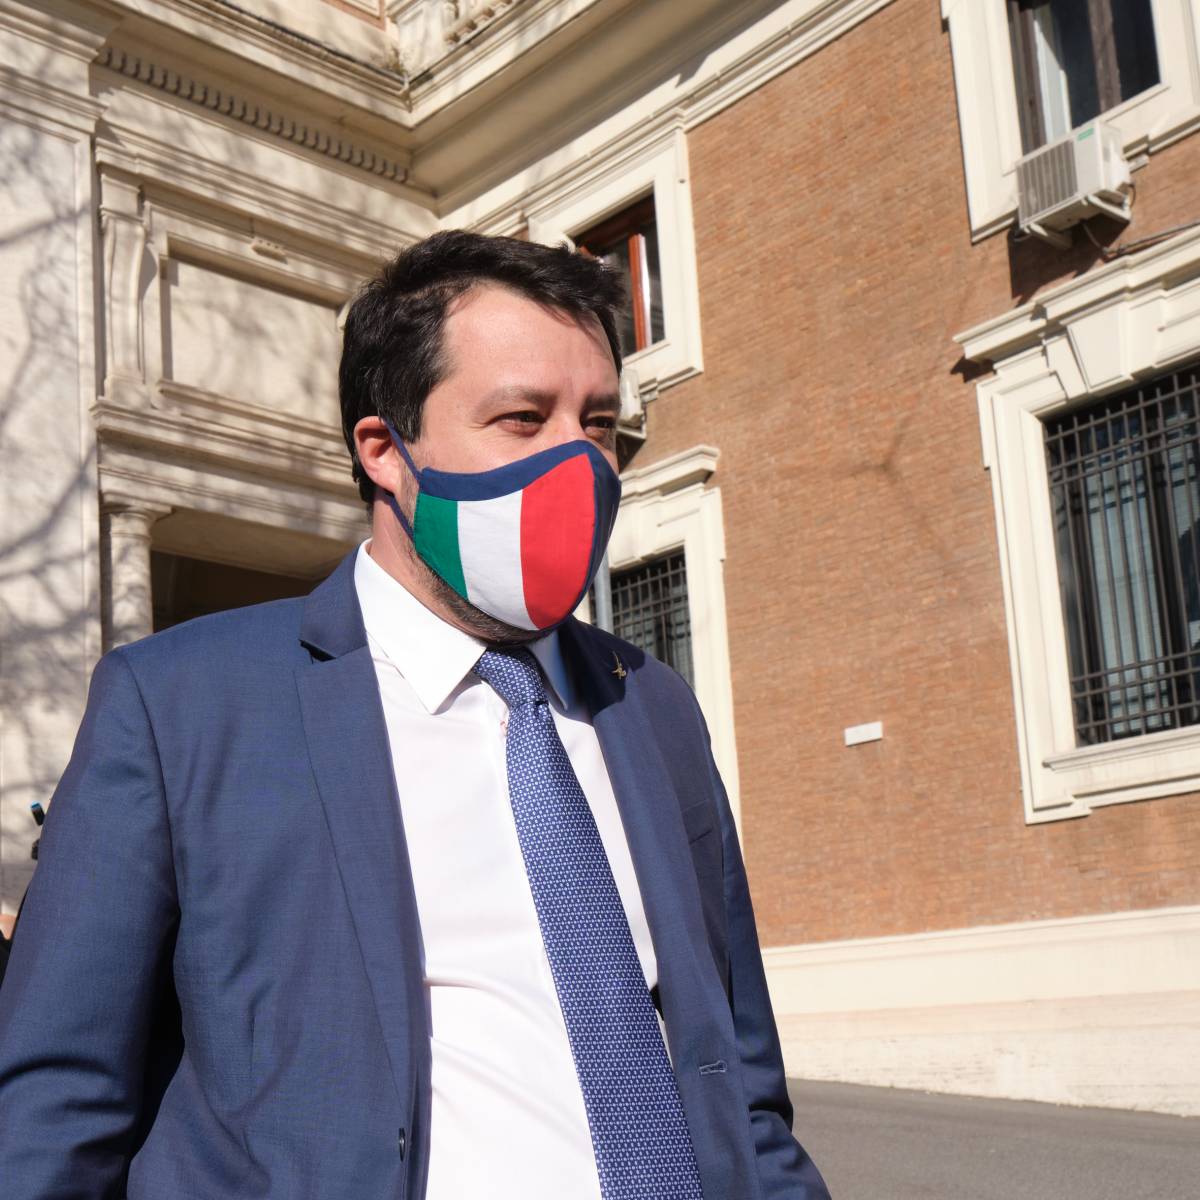 "Ho difeso i confini del Paese”. Ma il pm chiede il processo per Salvini